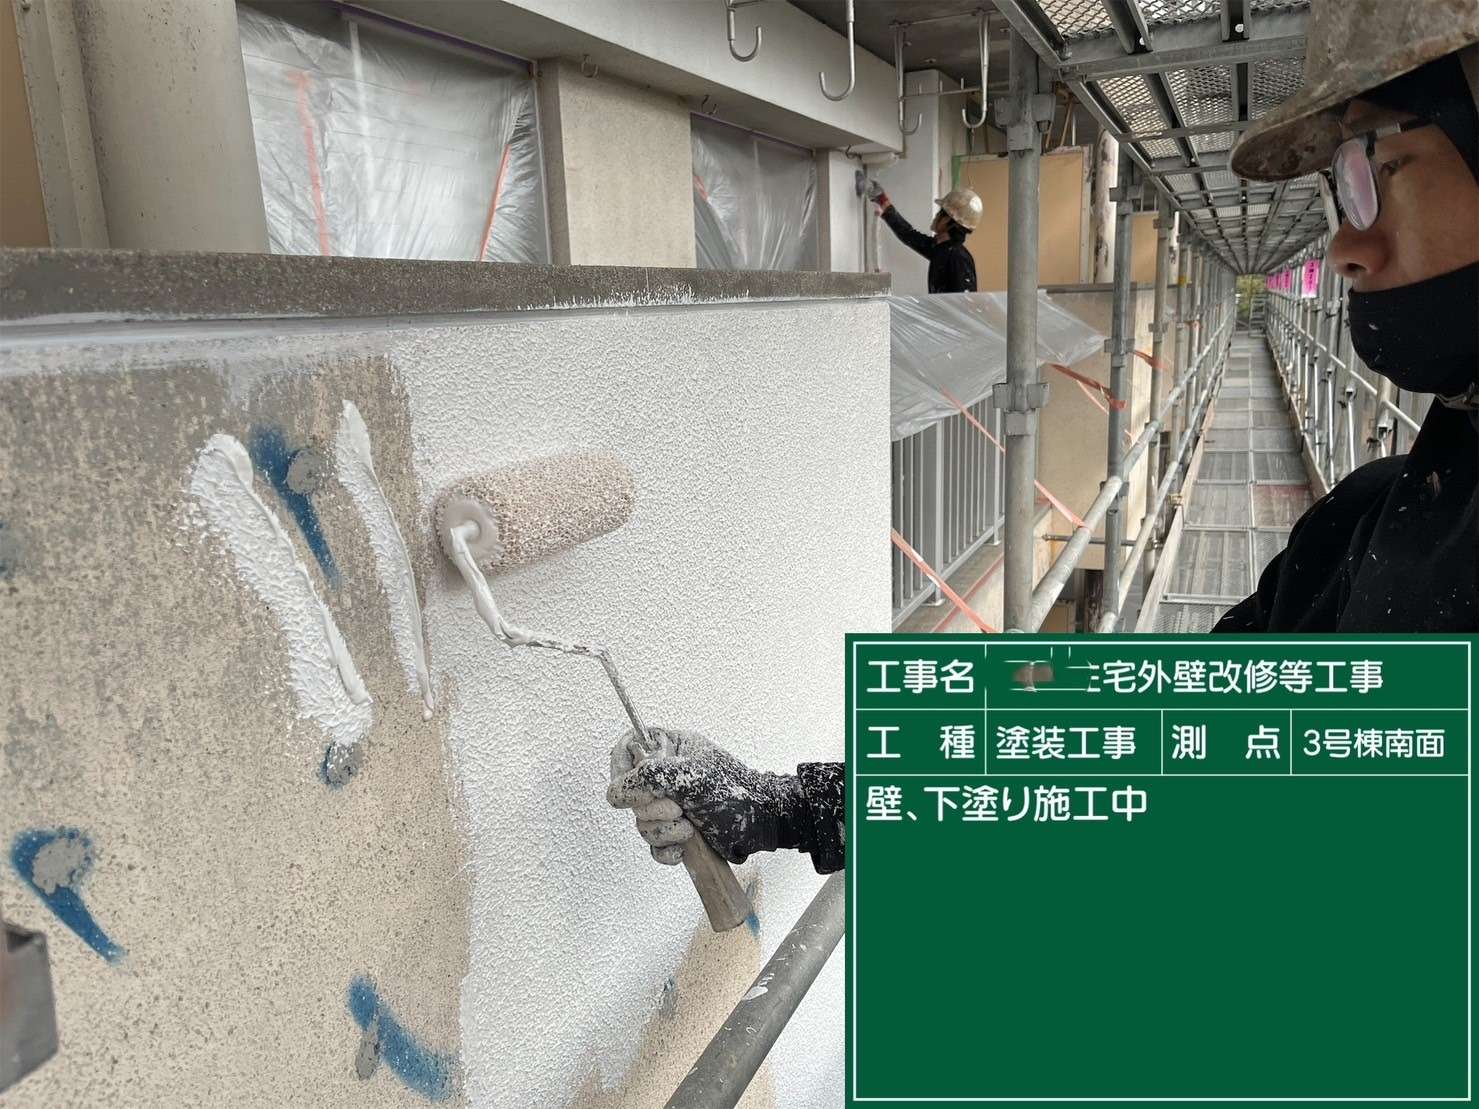 愛知県Tマンション外壁塗装工事が完工致しました✨愛知県・名古屋市で塗装工事で塗装をお考えの方は是非三誠株式会社にお任せください☺